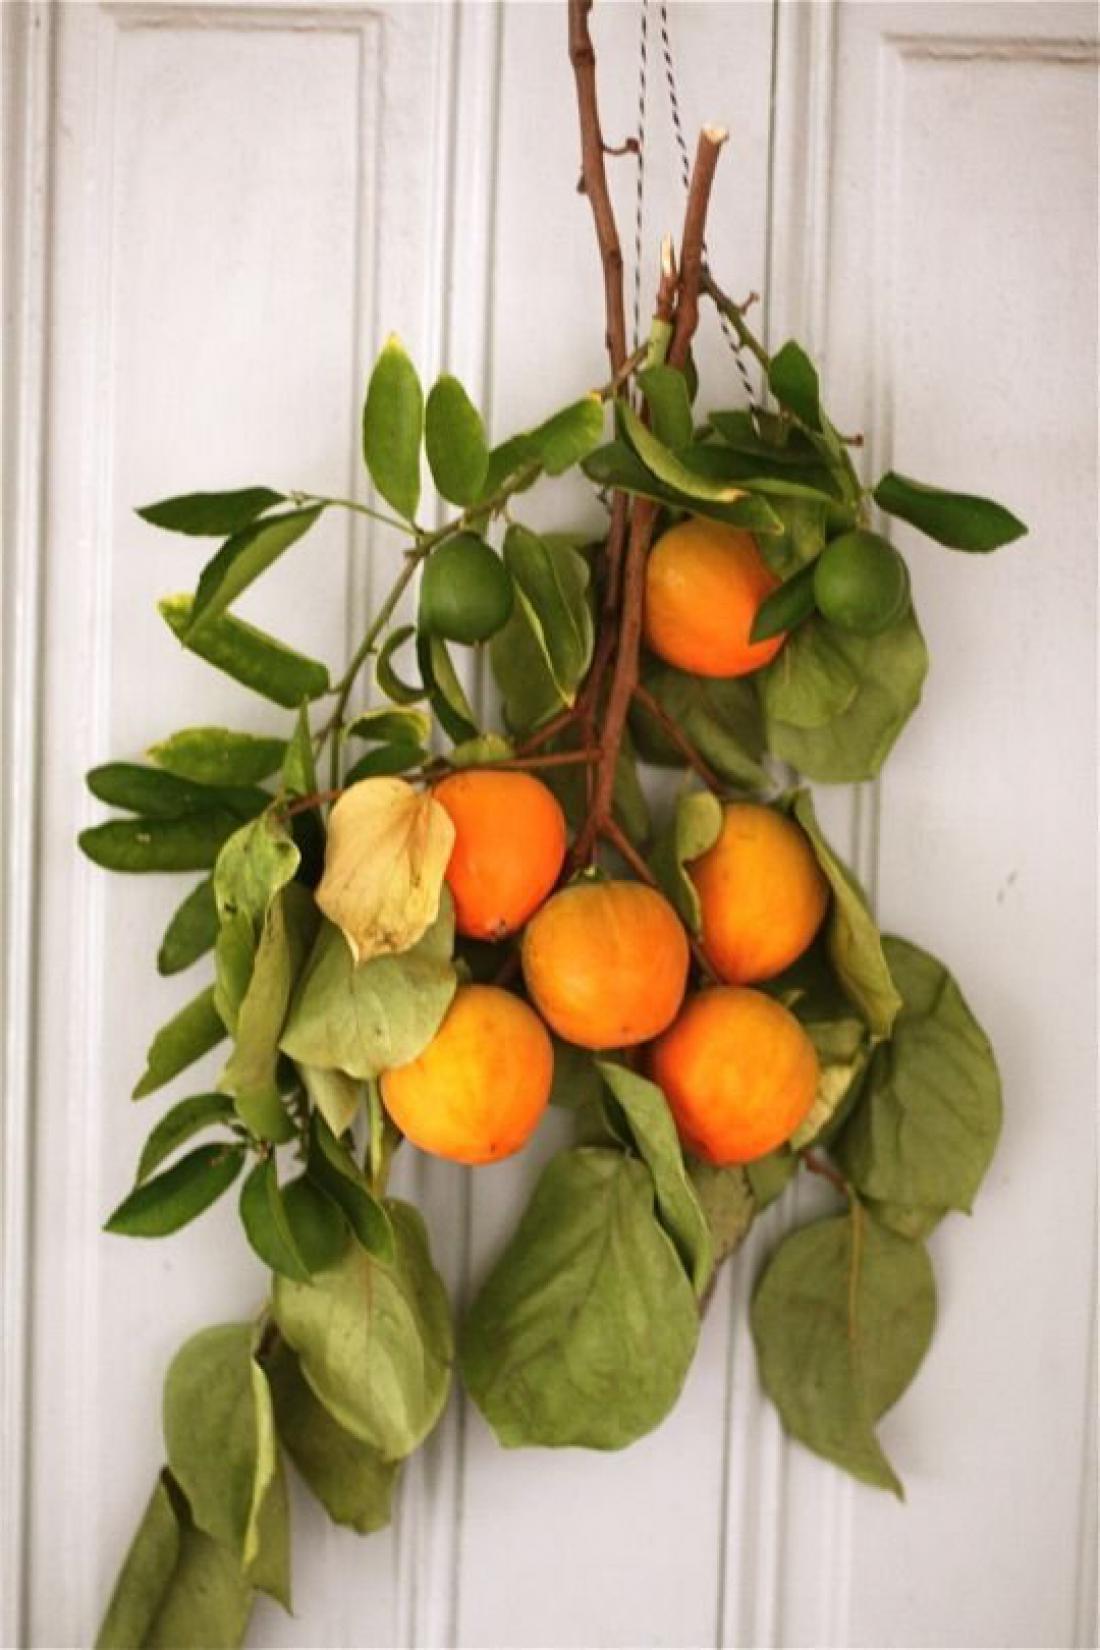 Veje citrusov so lahko alternativa smrečju in venčkom, dekoracija bo inovativna in dišeča.